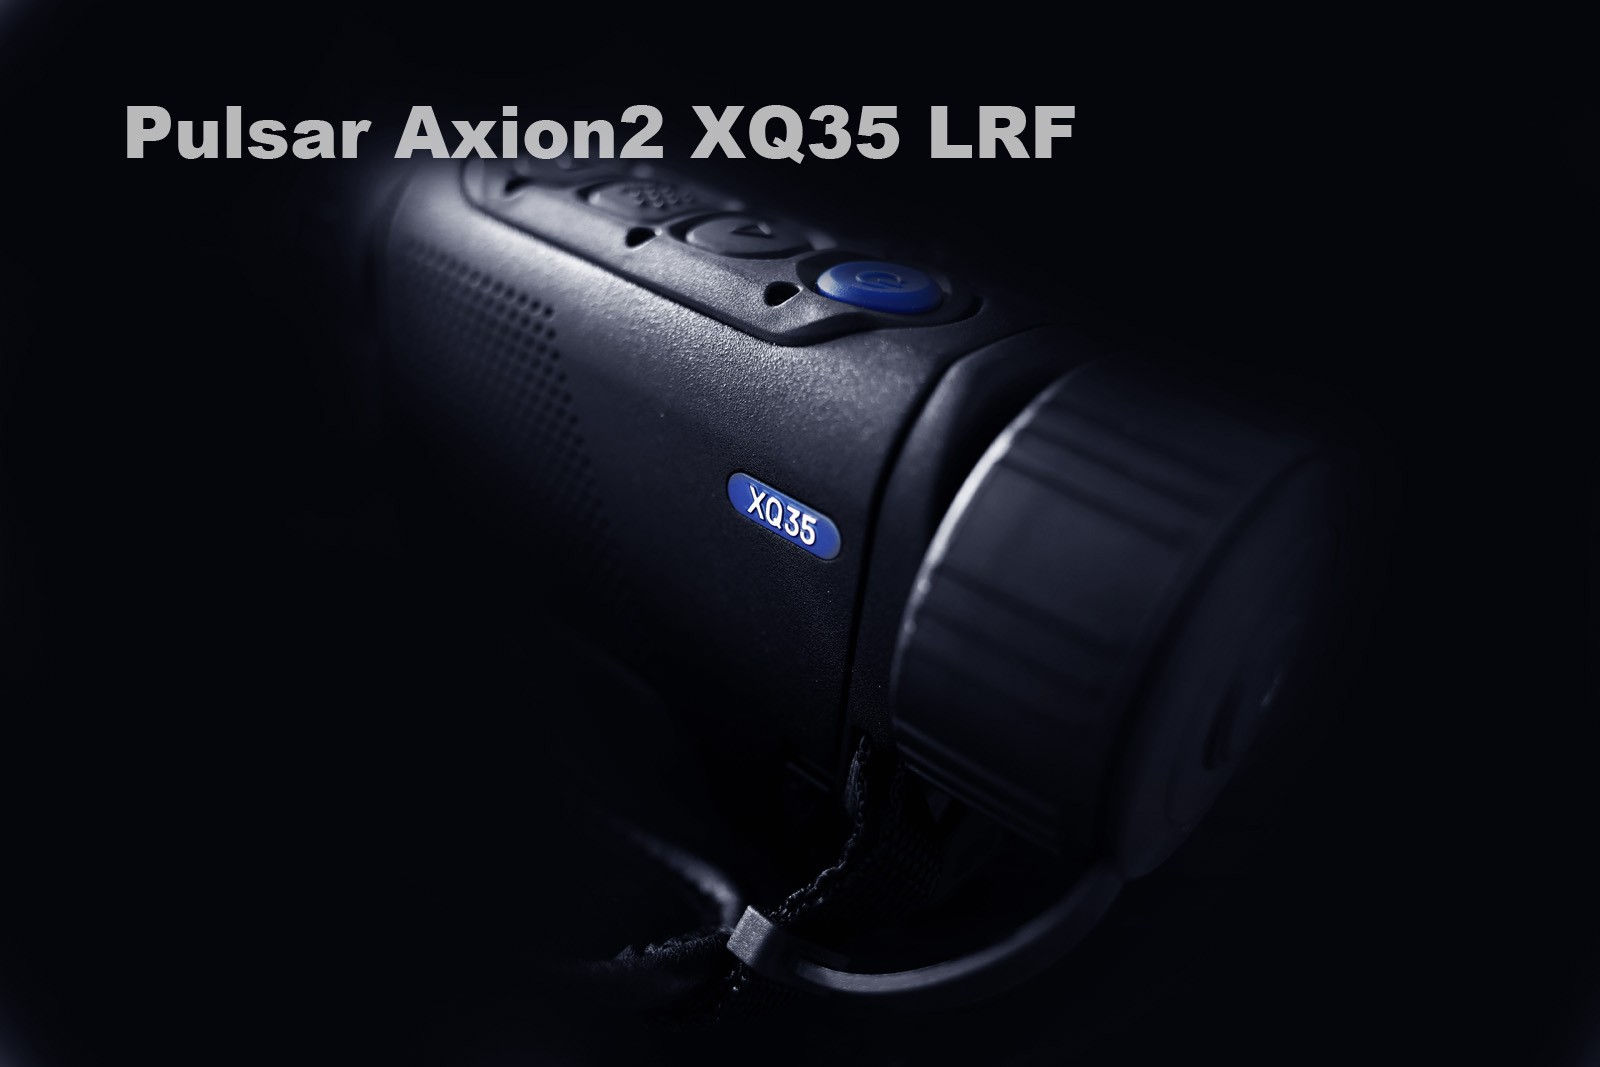 Pulsar Axion2 XQ35 LRF